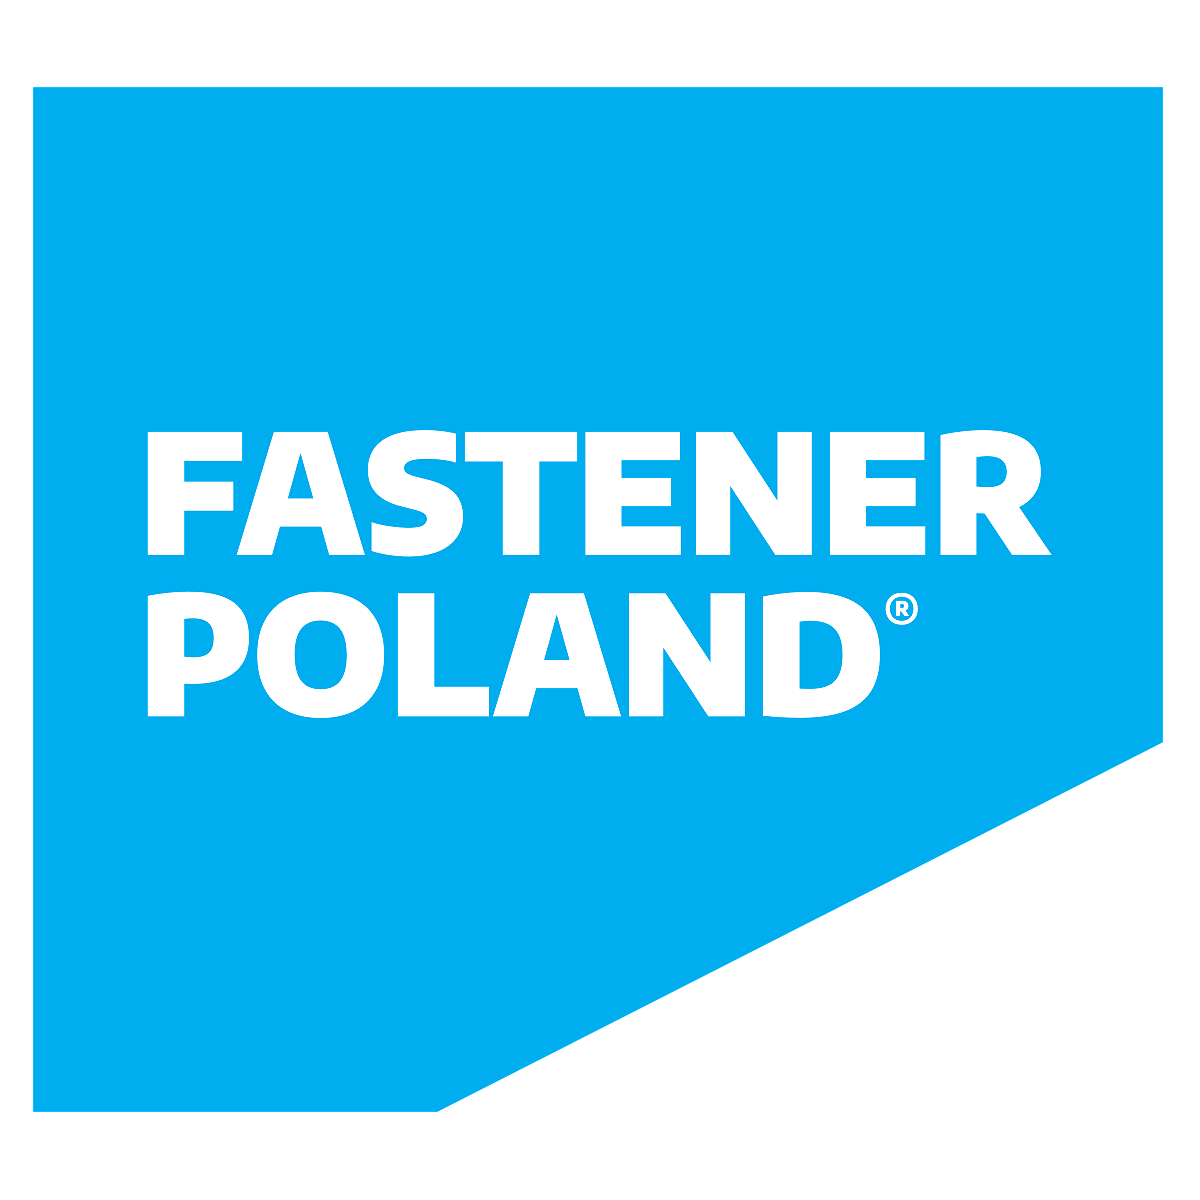 波蘭克拉科夫國際五金工具及緊固件展覽會logo